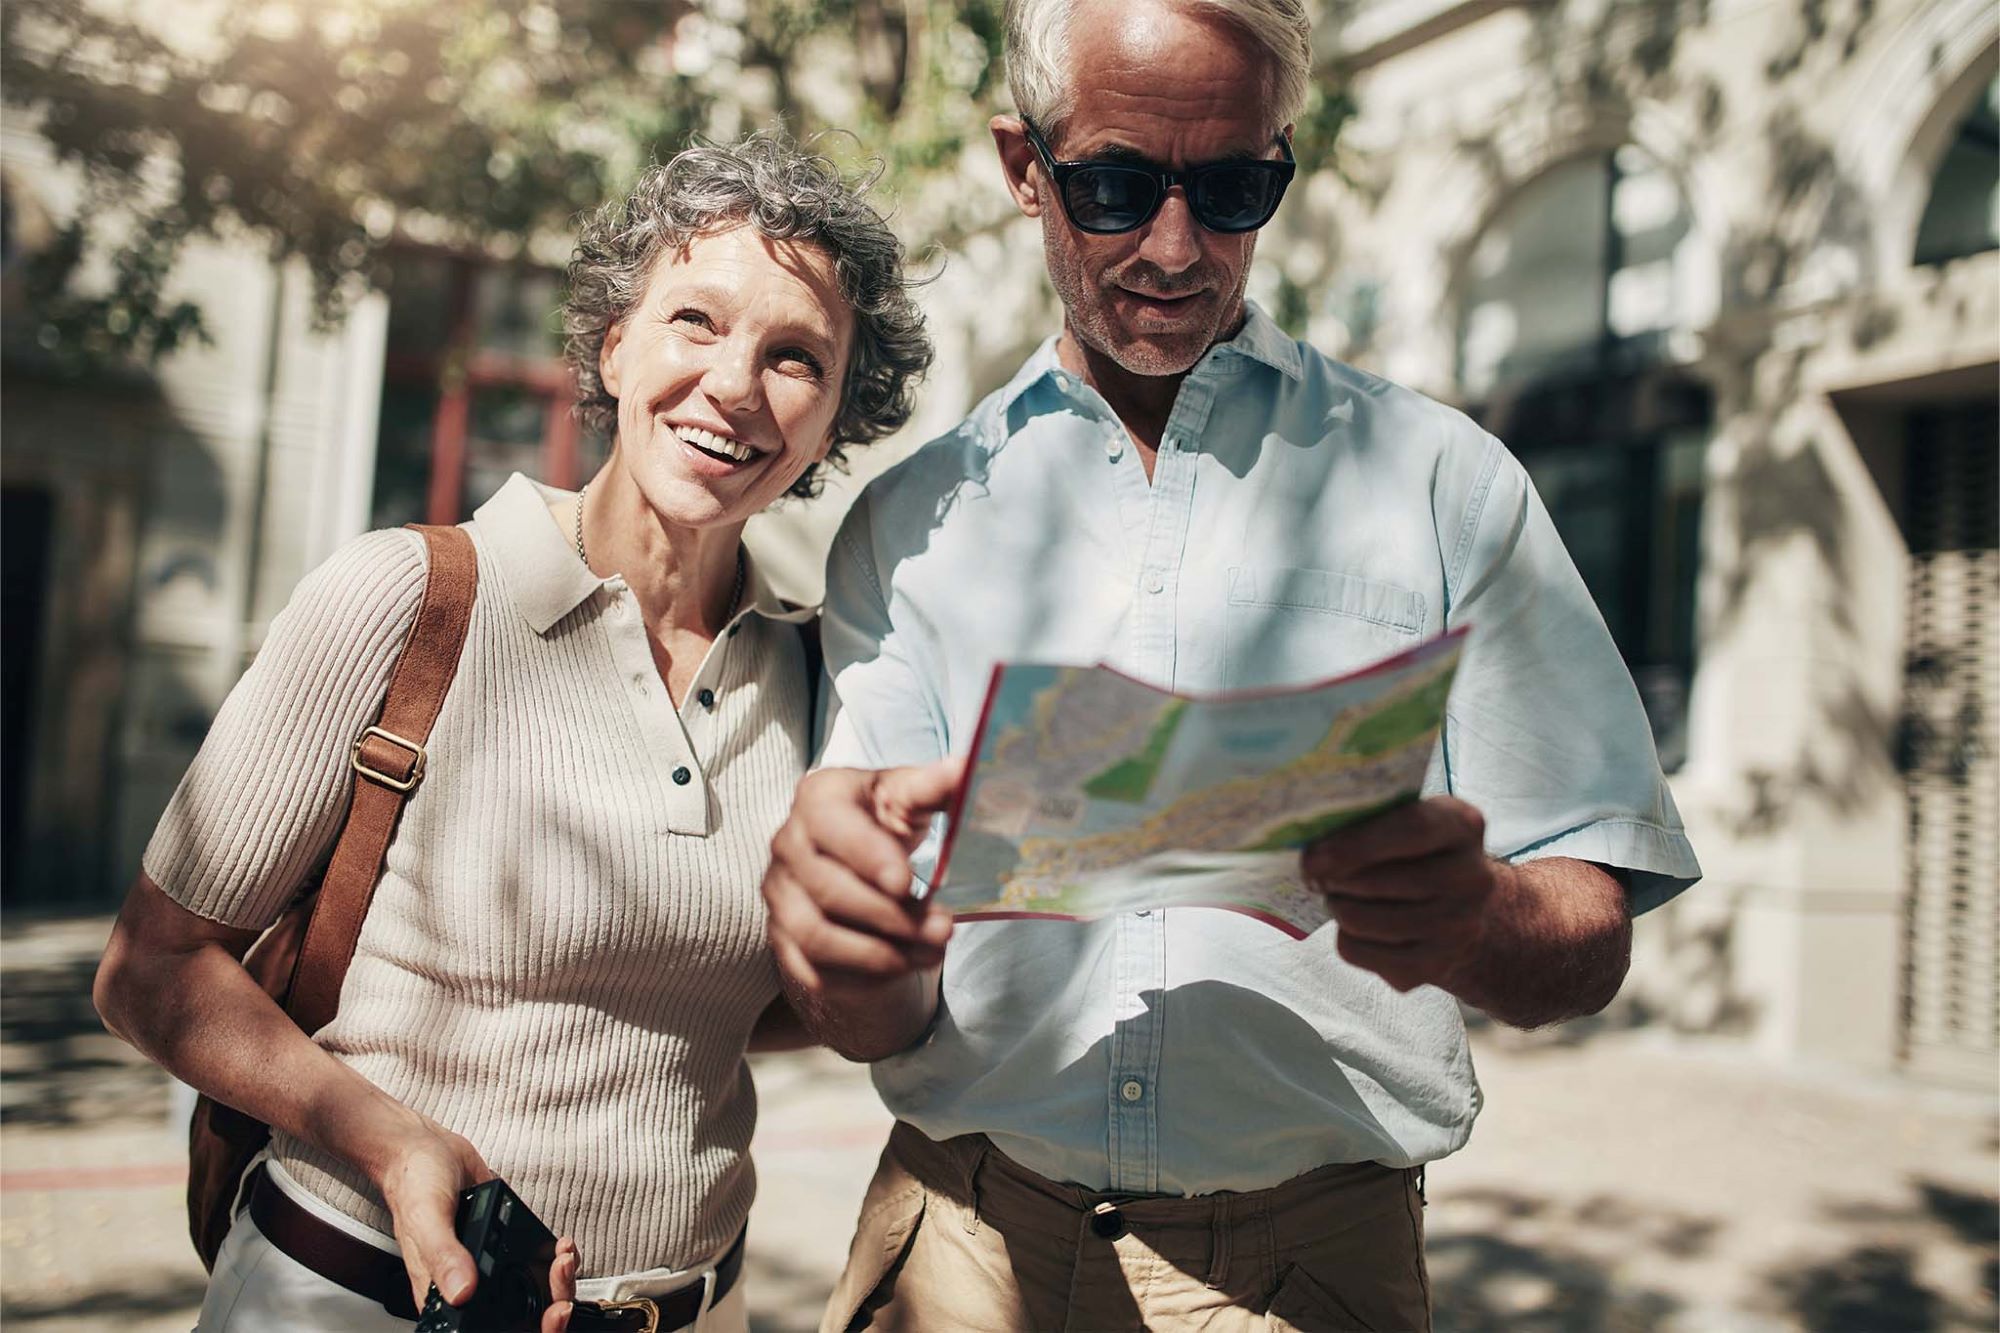 Ein Paar im mittleren Alter flaniert bei Sonnenschein durch eine Stadt. Sie hat kurze graue Locken und hält einen Fotoapparat in der Hand. Sie lacht. Er ist braungebrannt, trägt eine Sonnenbrille und orientiert sich mithilfe eines Stadtplans.